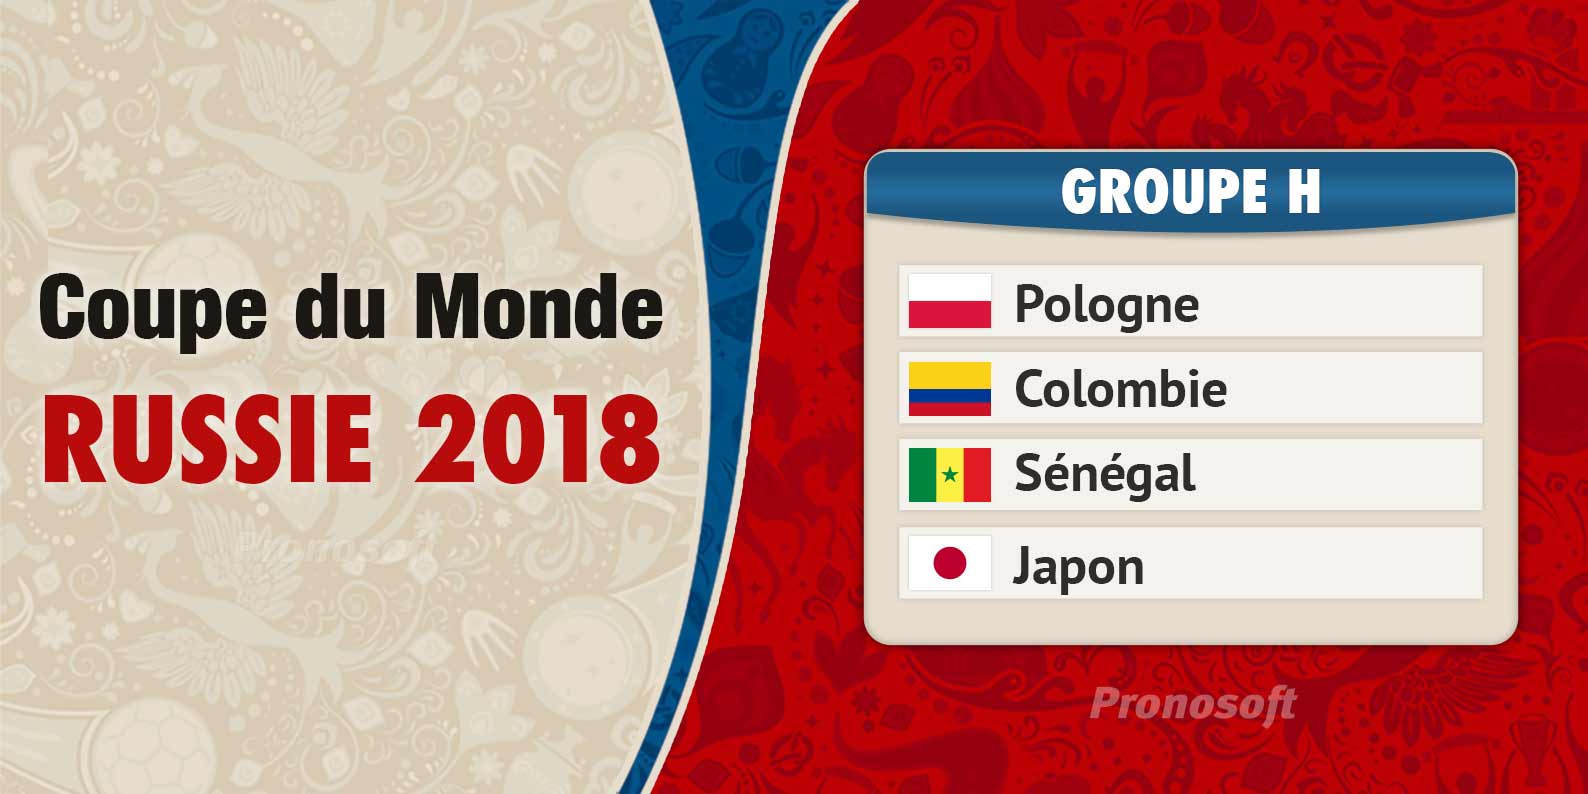 Coupe du Monde en Russie 2018 - Groupe H